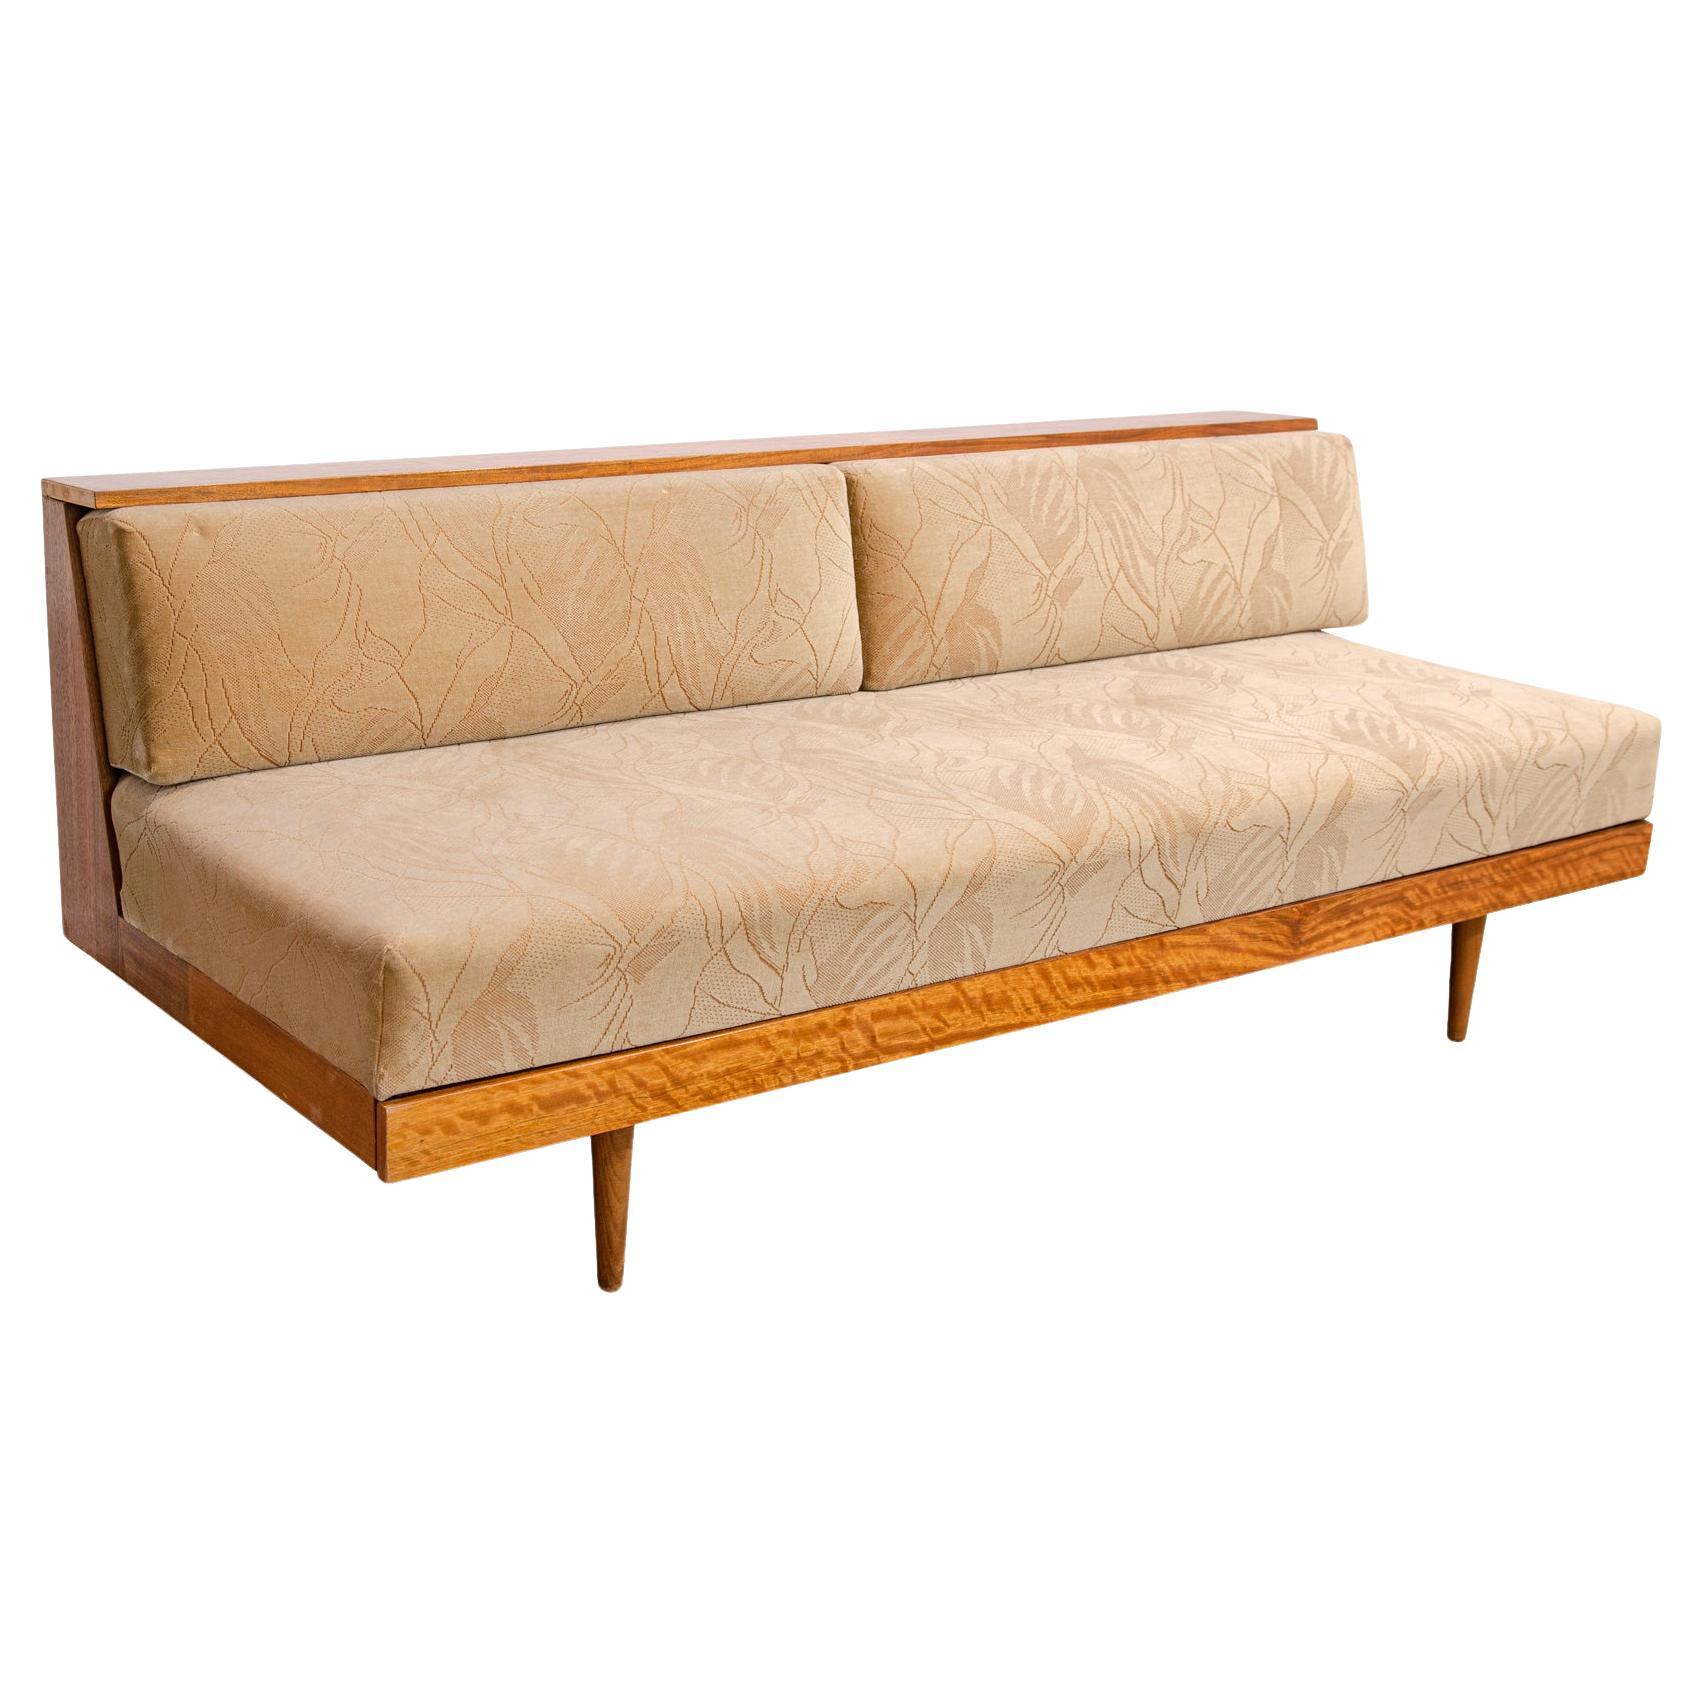 Midcentury Scandinavian style Folding Sofa by Sedláček & Vyčítal, 1960´s, Czech. For Sale